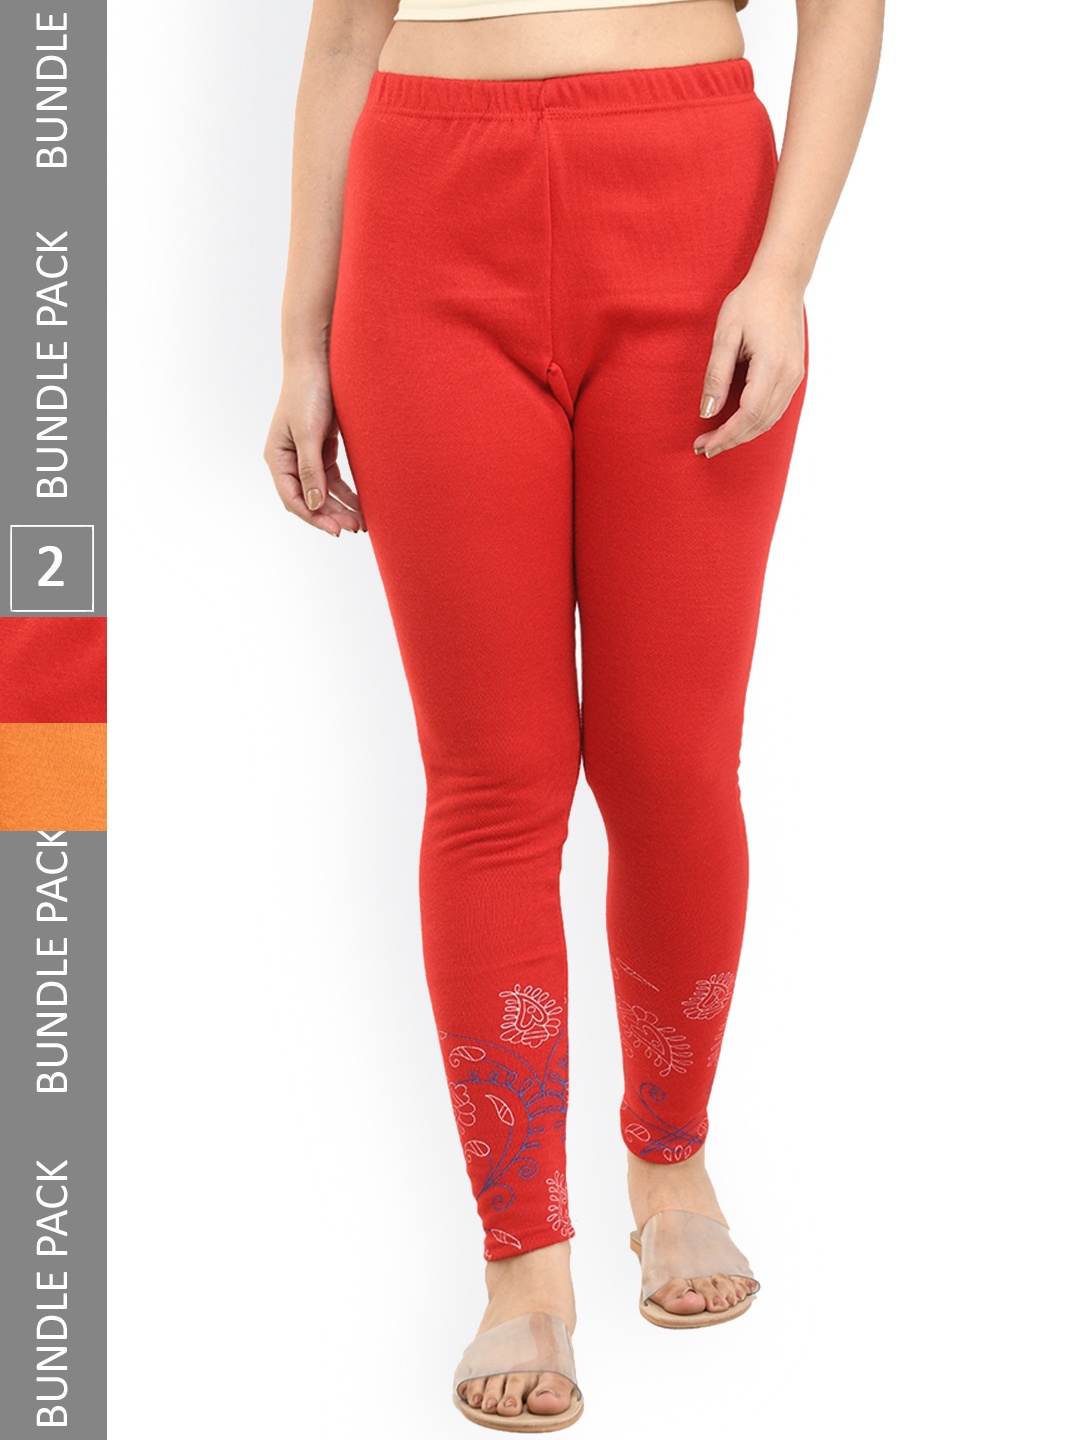 

IndiWeaves Pack Of 2 Printed Woolen Warm Ankle-Length Leggings, Red